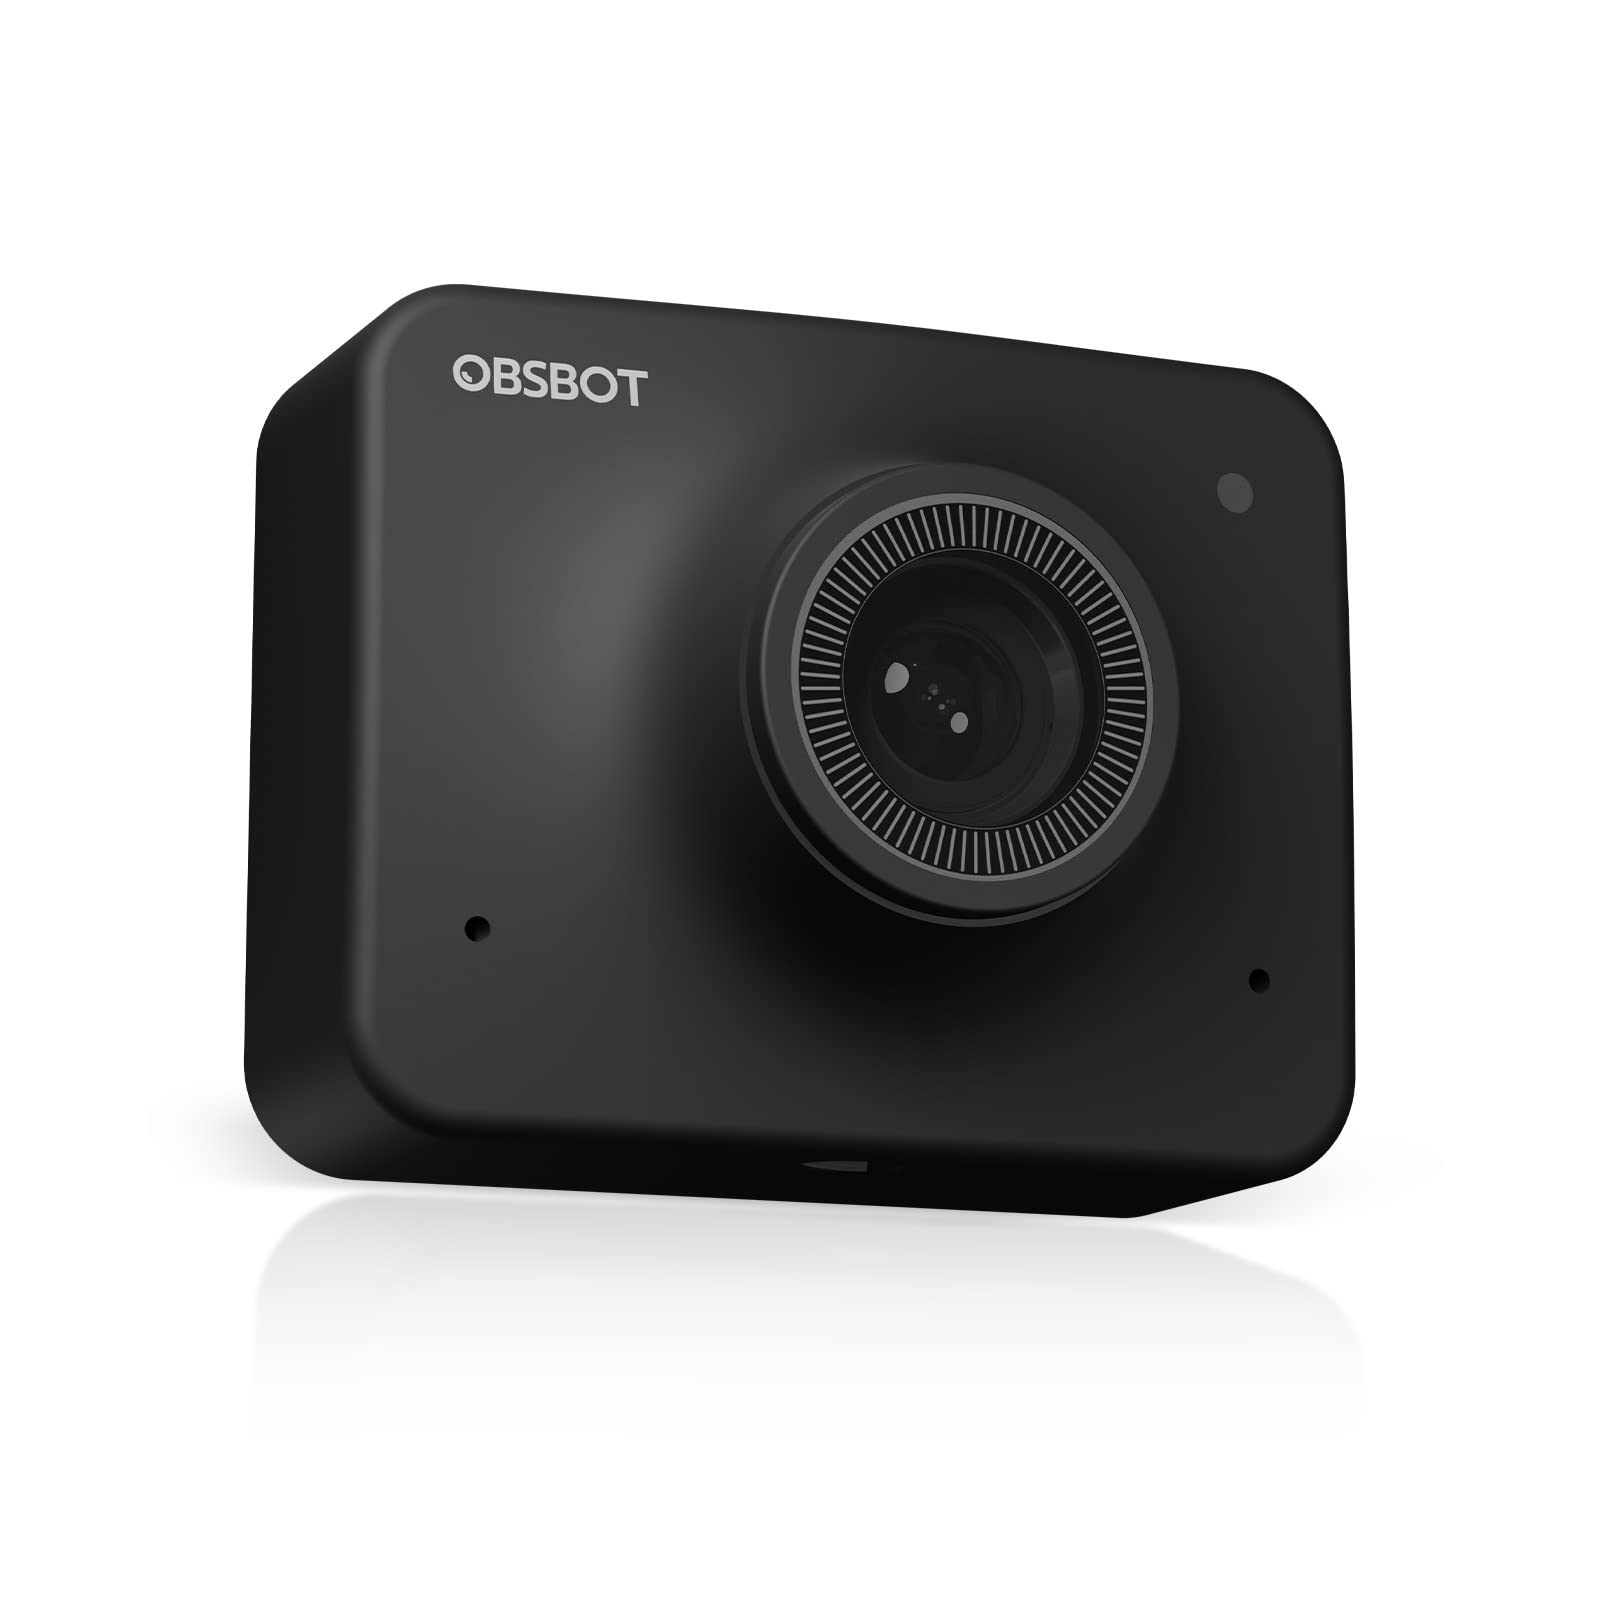  OBSBOT Poznaj kamerę internetową 1080P Ultra HD Kamera internetowa zasilana sztuczną inteligencją Kamera do wideokonferencji 1080P z funkcją automatycznego kadrowania AI Automatyczna ostrość...